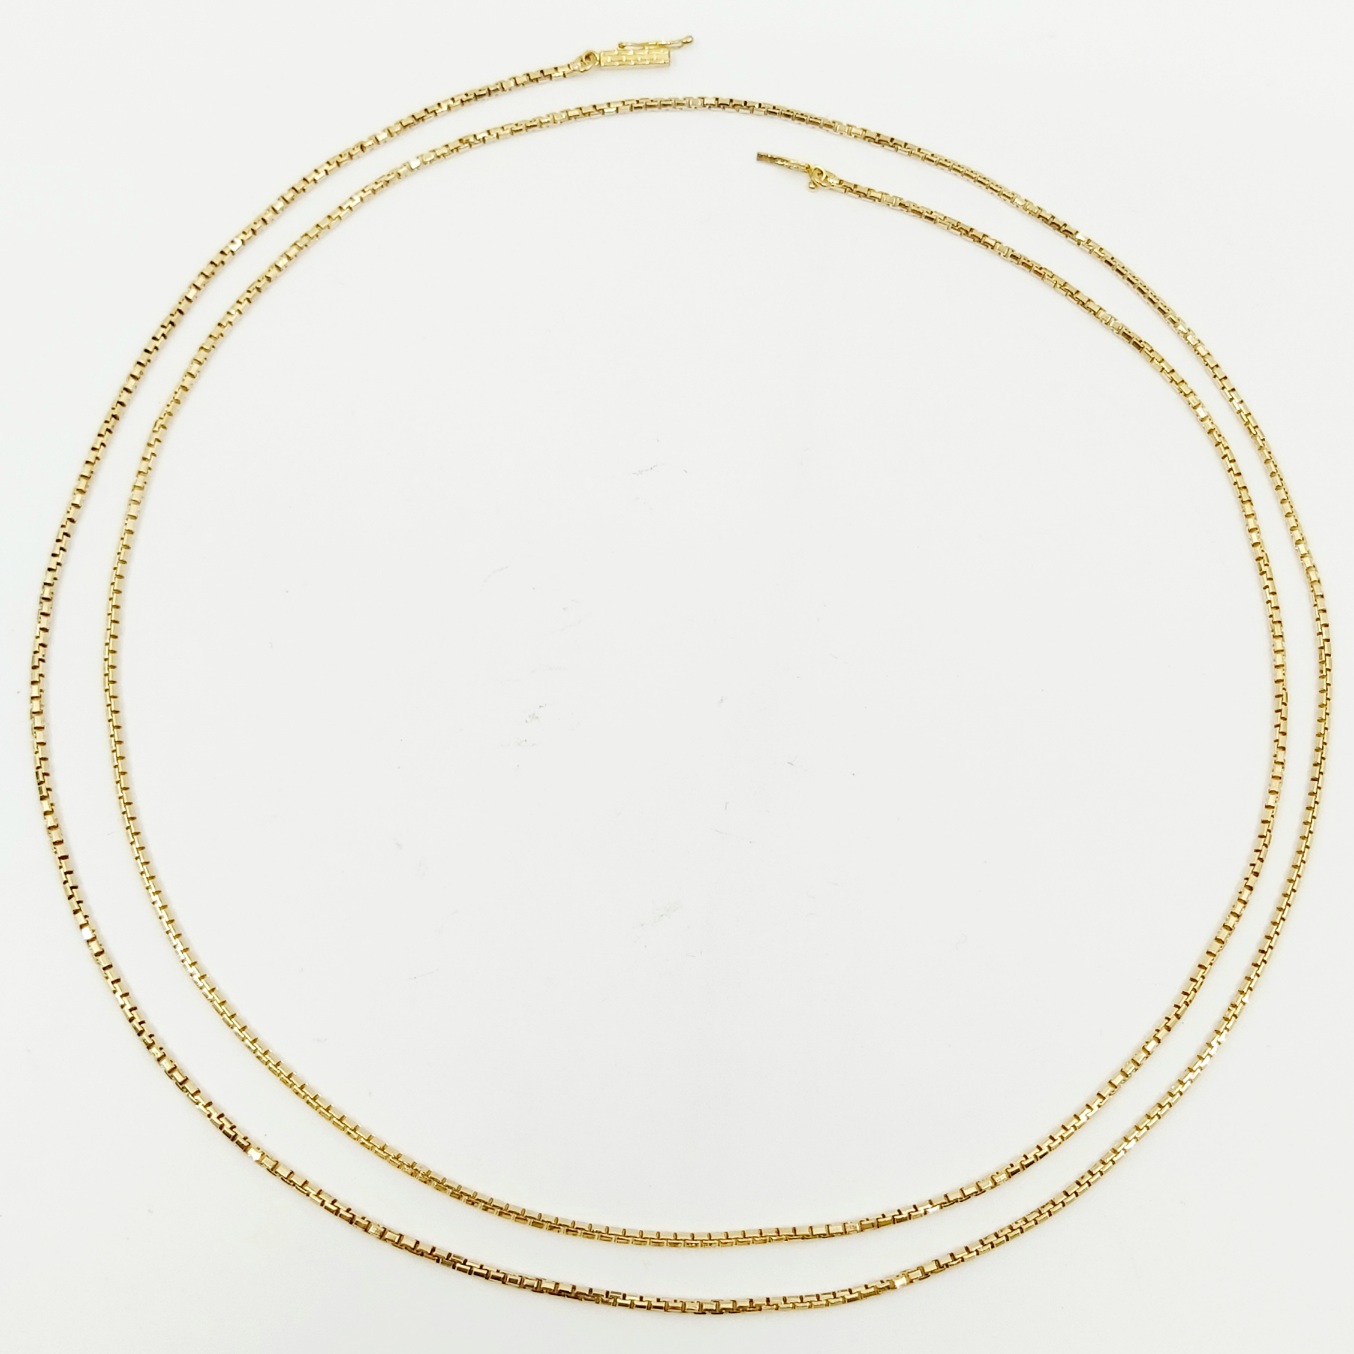 1 Halskette 750/- Länge: 91,5 cm, 20,22 g